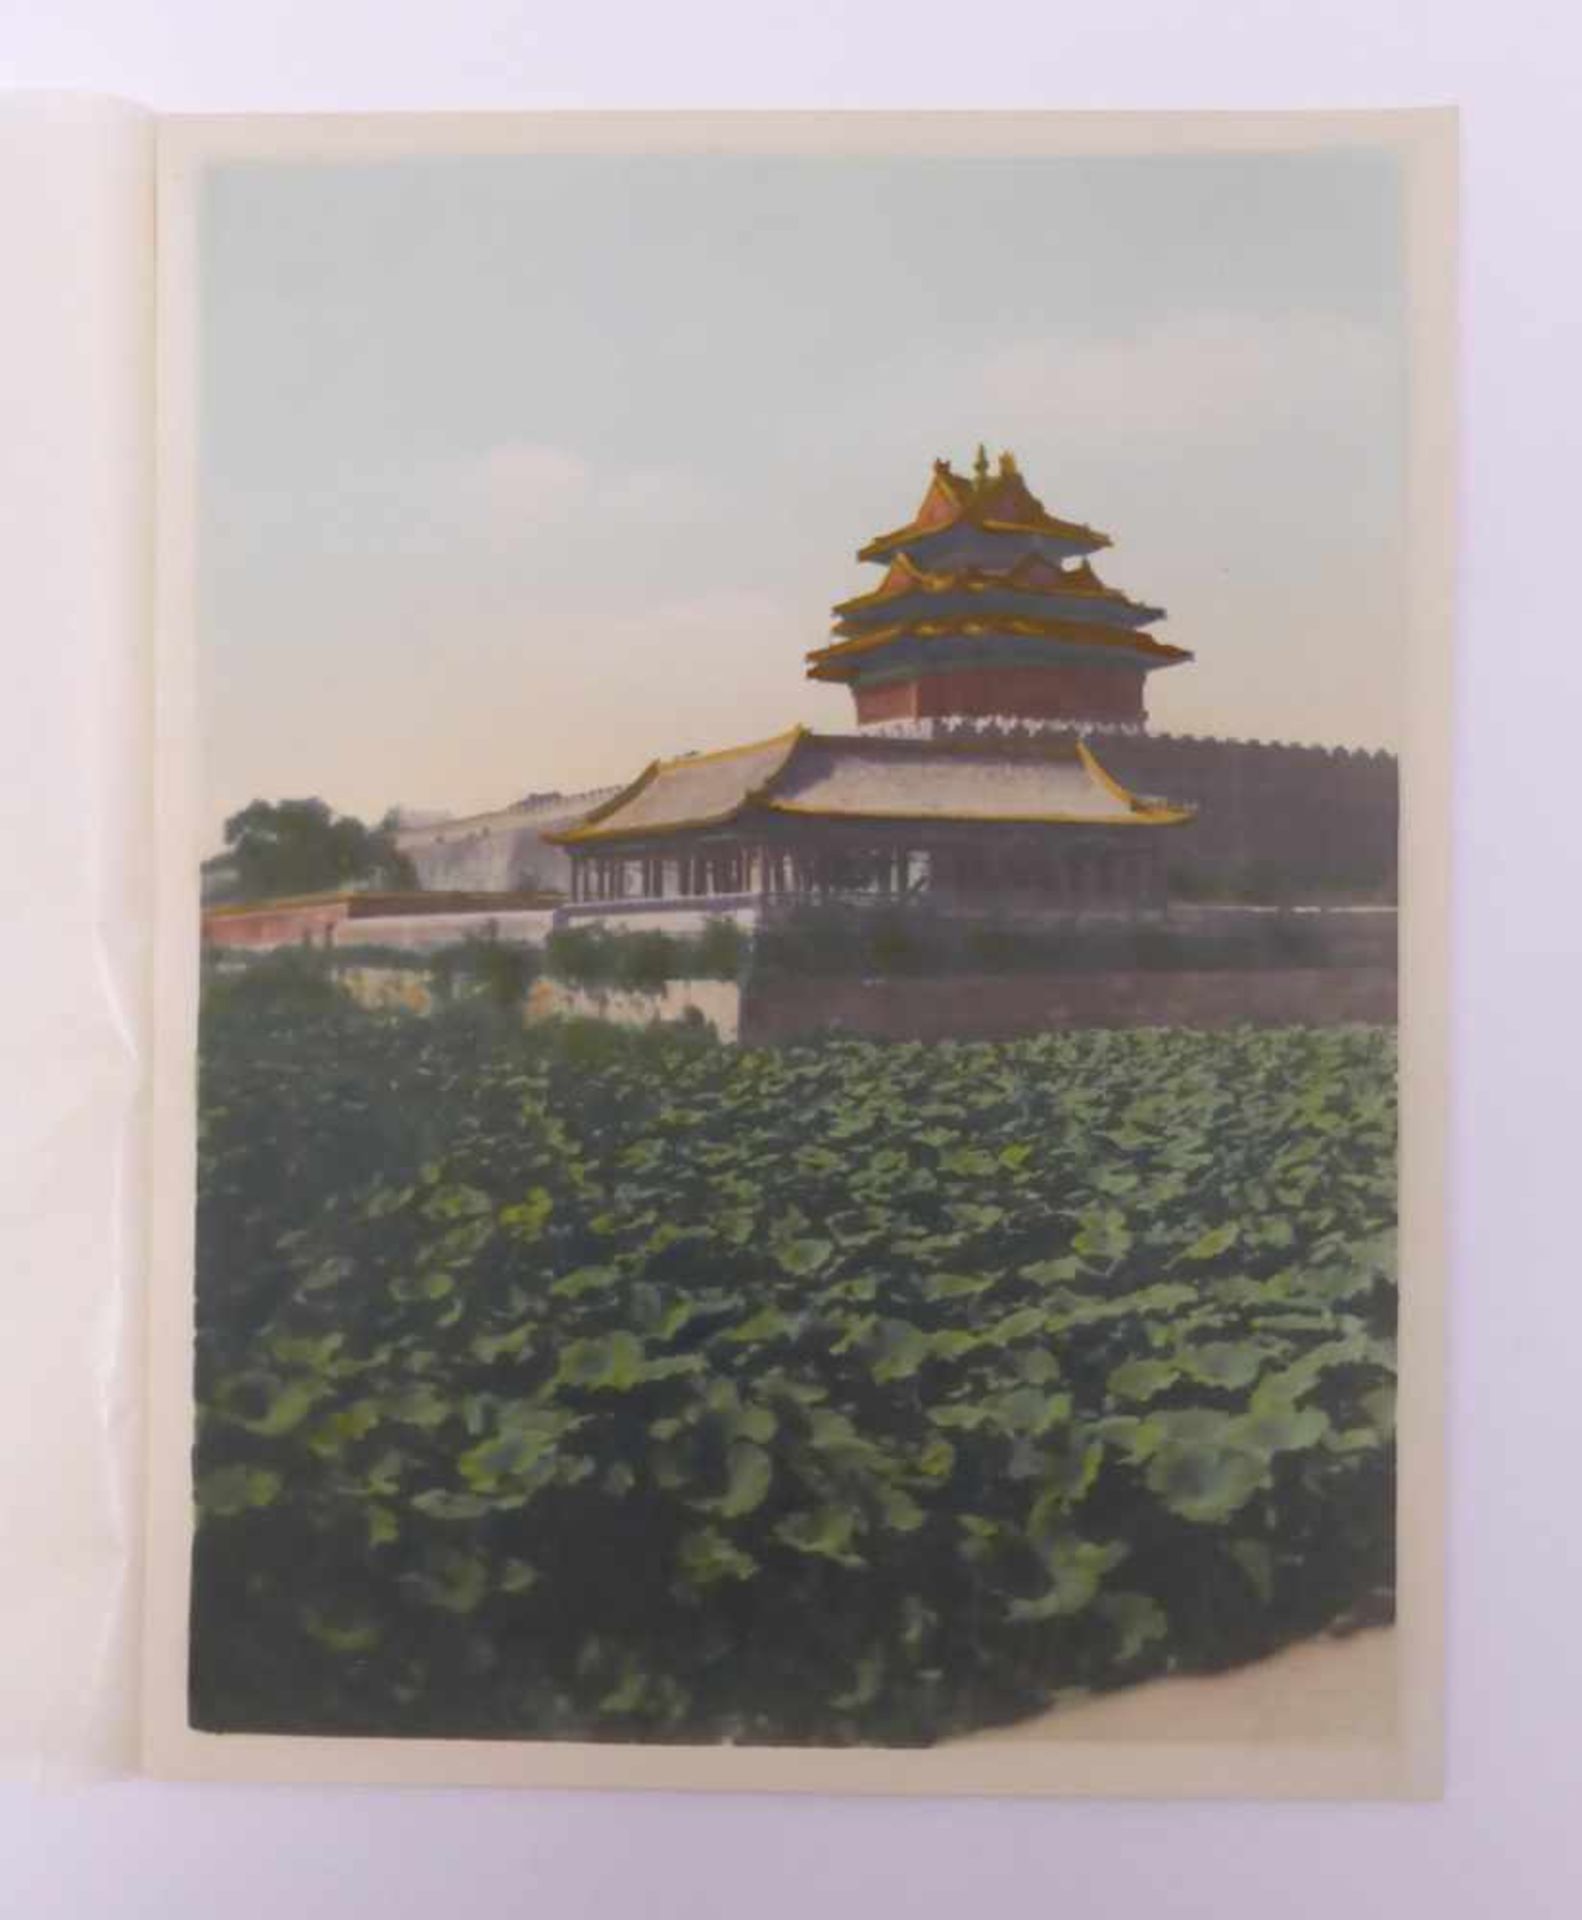 SIEBZEHN HISTORISCHE FOTOS DER VERBOTENEN STADT UND VOM SOMMERPALAST. China. Datiert 1938 auf dem - Bild 19 aus 19